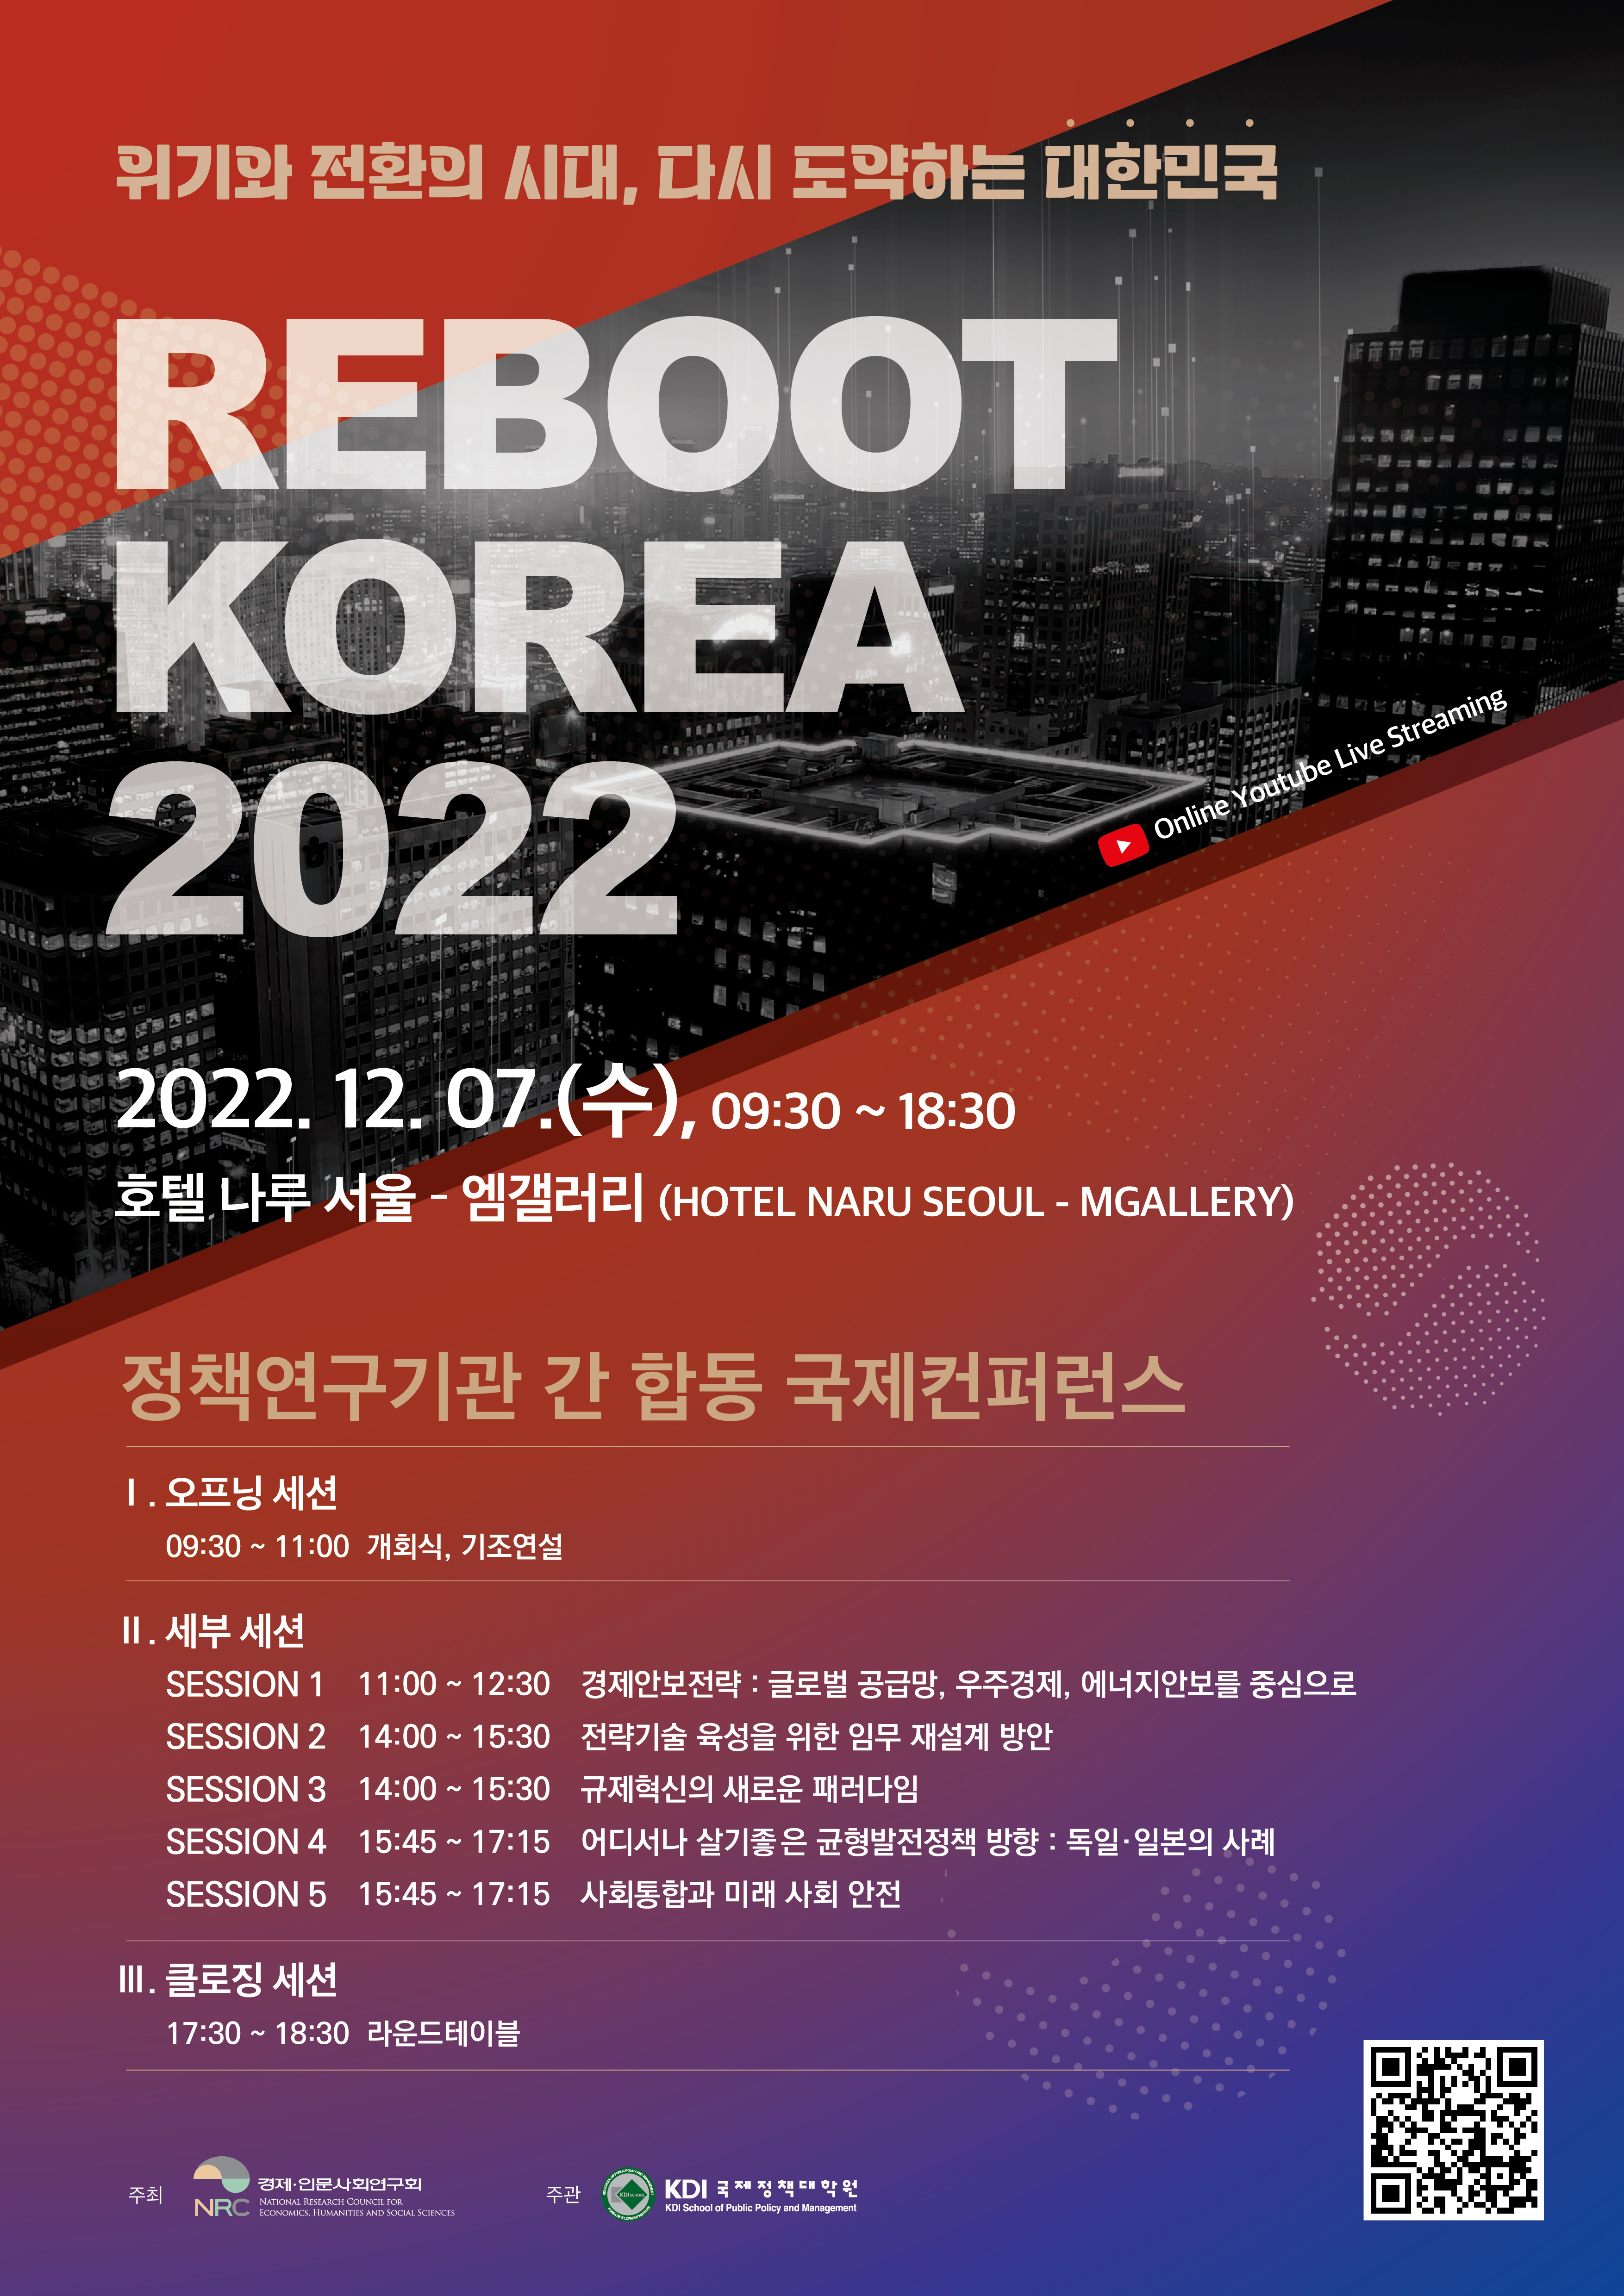 「정책연구기관 간 합동 국제컨퍼런스  Reboot Korea 2022」개최